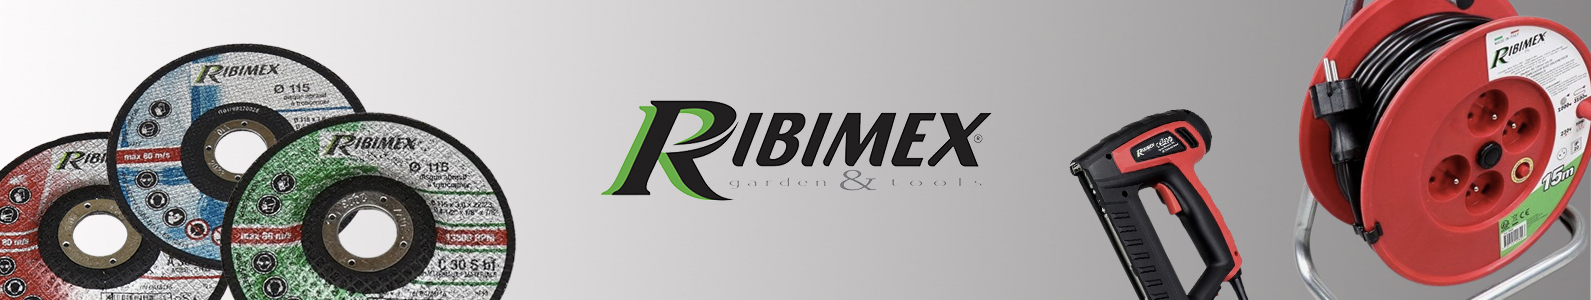 RIBIMEX-Werkzeuge